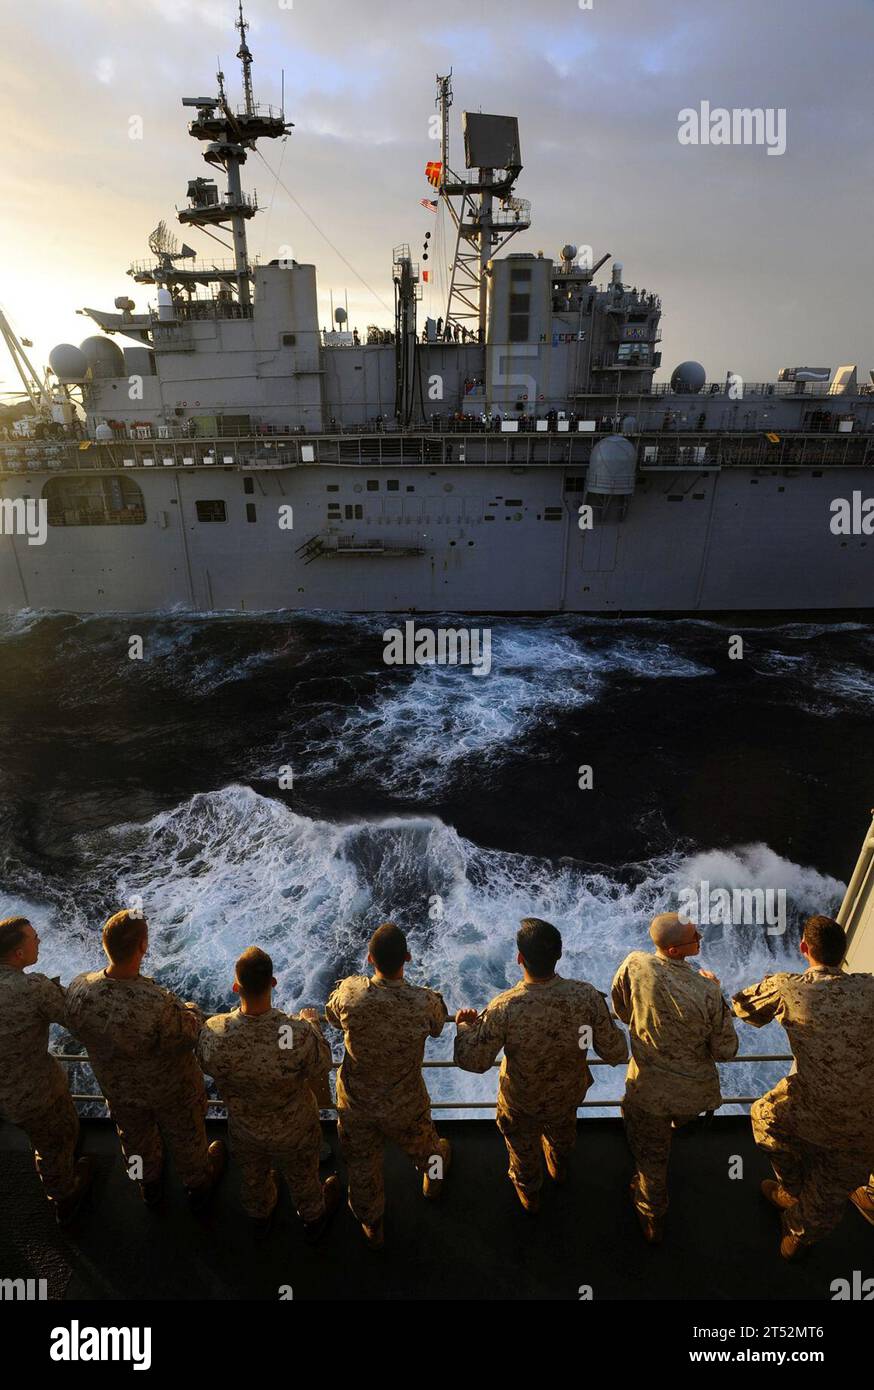 0905185345W-104 OCÉANO ATLÁNTICO (18 de mayo de 2009) Marines de la 22ª Unidad Expedicionaria de Marines (22 MEU) se reúnen en una cubierta meteorológica junto al puerto a bordo del barco de desembarco anfibio USS Fort McHenry (LSD 43) para ver cómo el buque de asalto anfibio USS Bataan (LHD 5) cierra para repostar combustible en el mar. Fort McHenry está en un despliegue programado con el Grupo de Preparación Anfibia de Bataan (ARG) apoyando las operaciones de seguridad marítima en las áreas de responsabilidad de la 5ta y 6ta Flota de los Estados Unidos. Marina Foto de stock